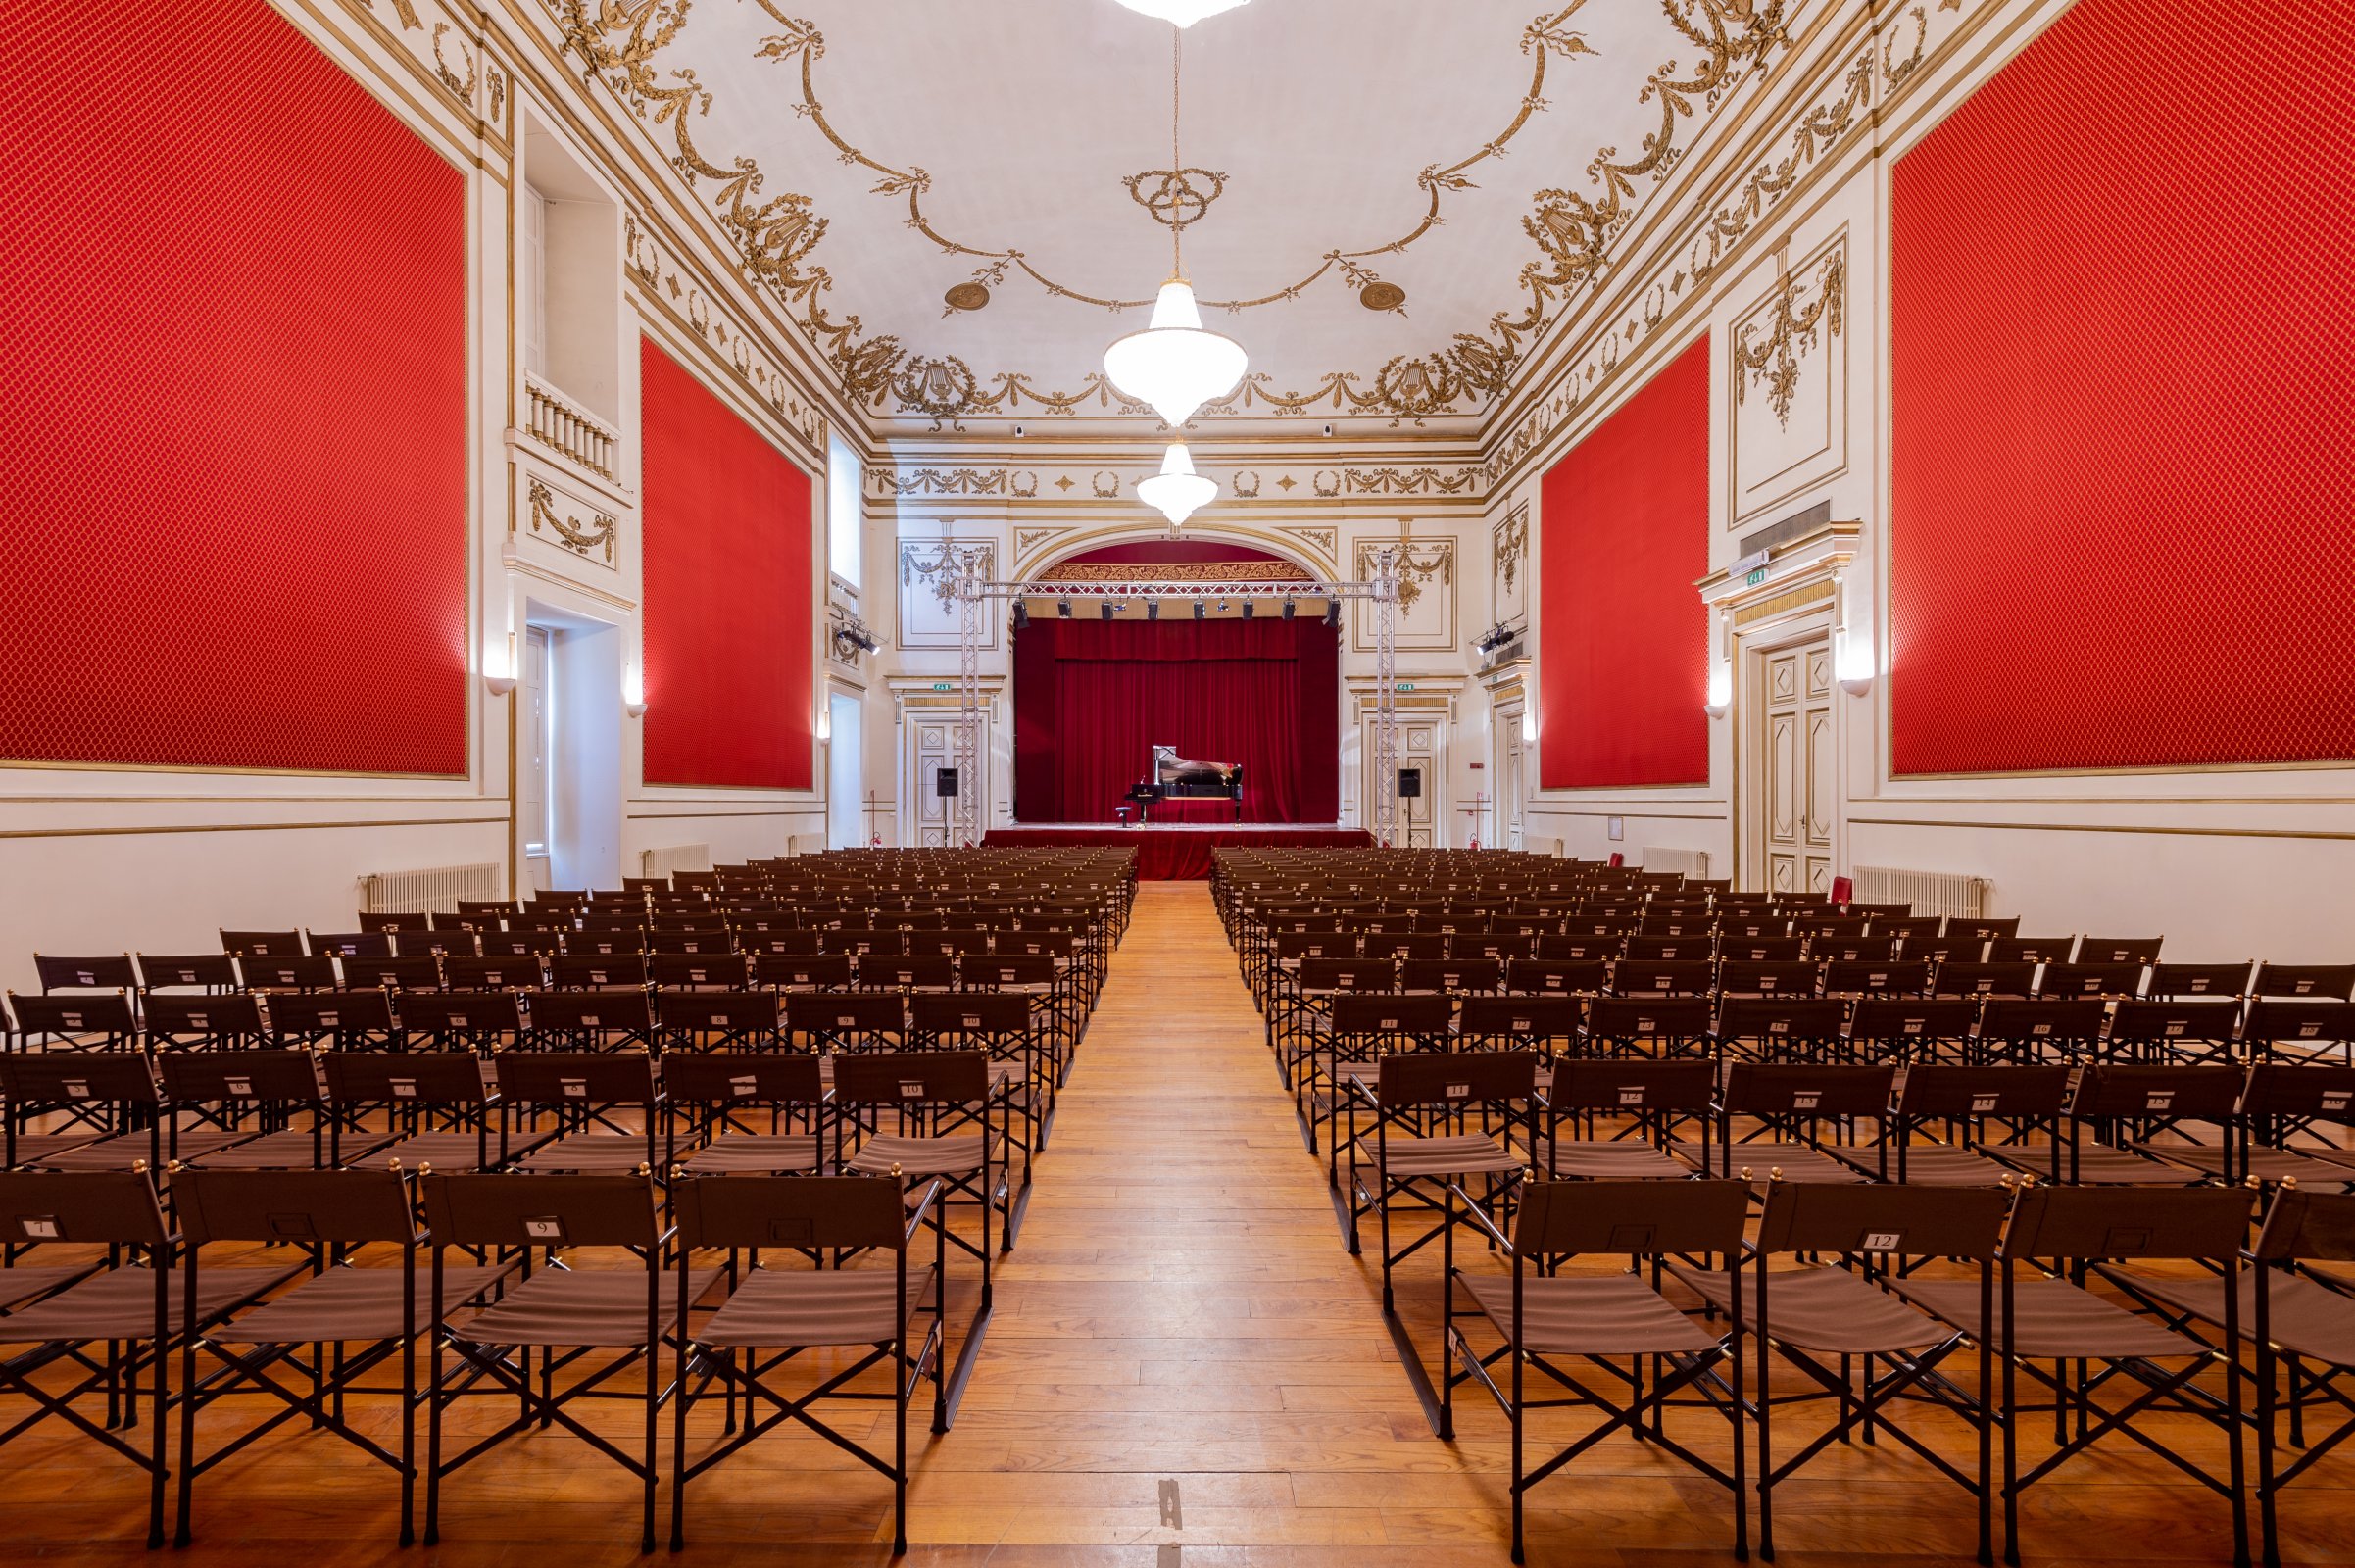 sala interna del teatro per concerti musicali con sedie come sedute e colori rossi accesi sulla parete